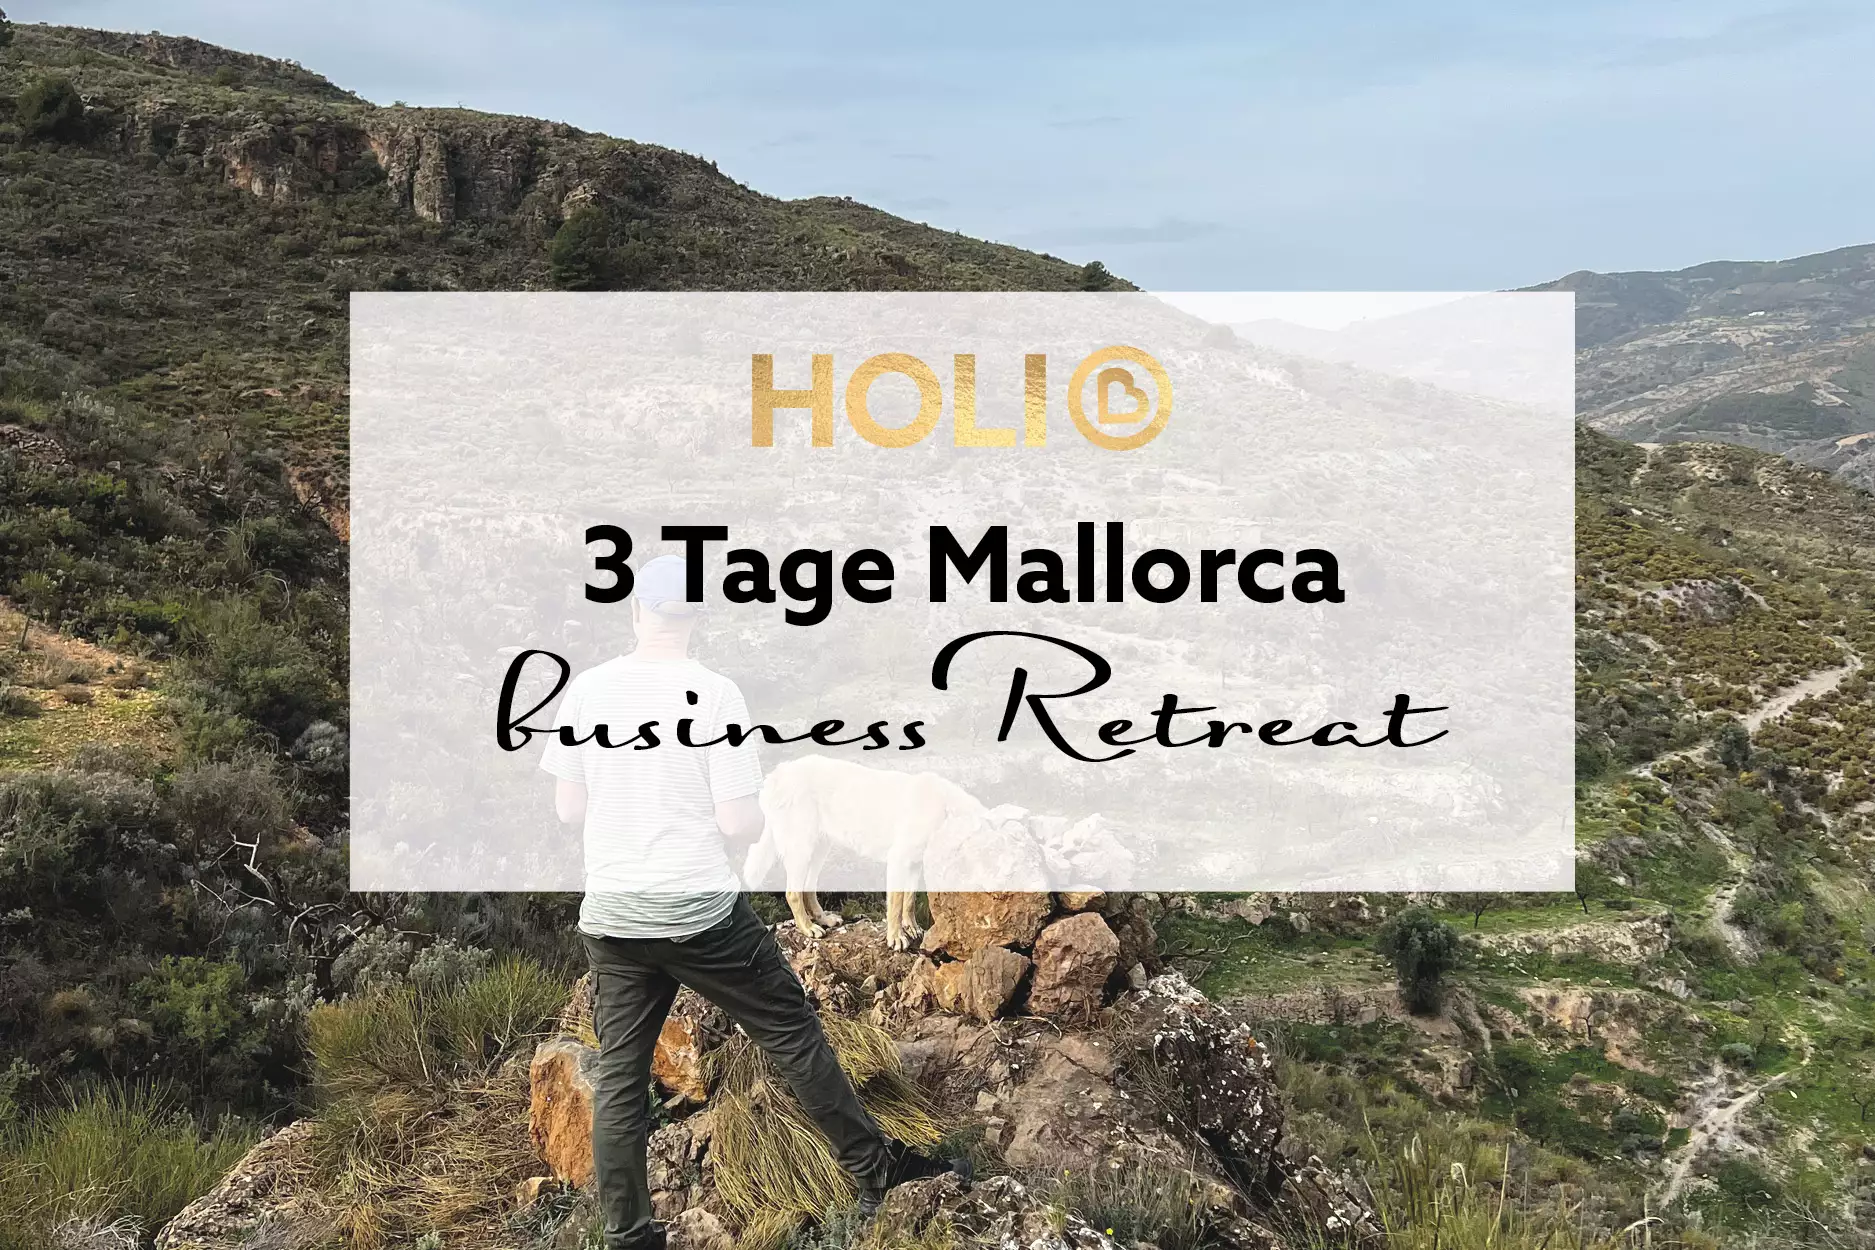 3 Tage Business-Retreat Mallorca